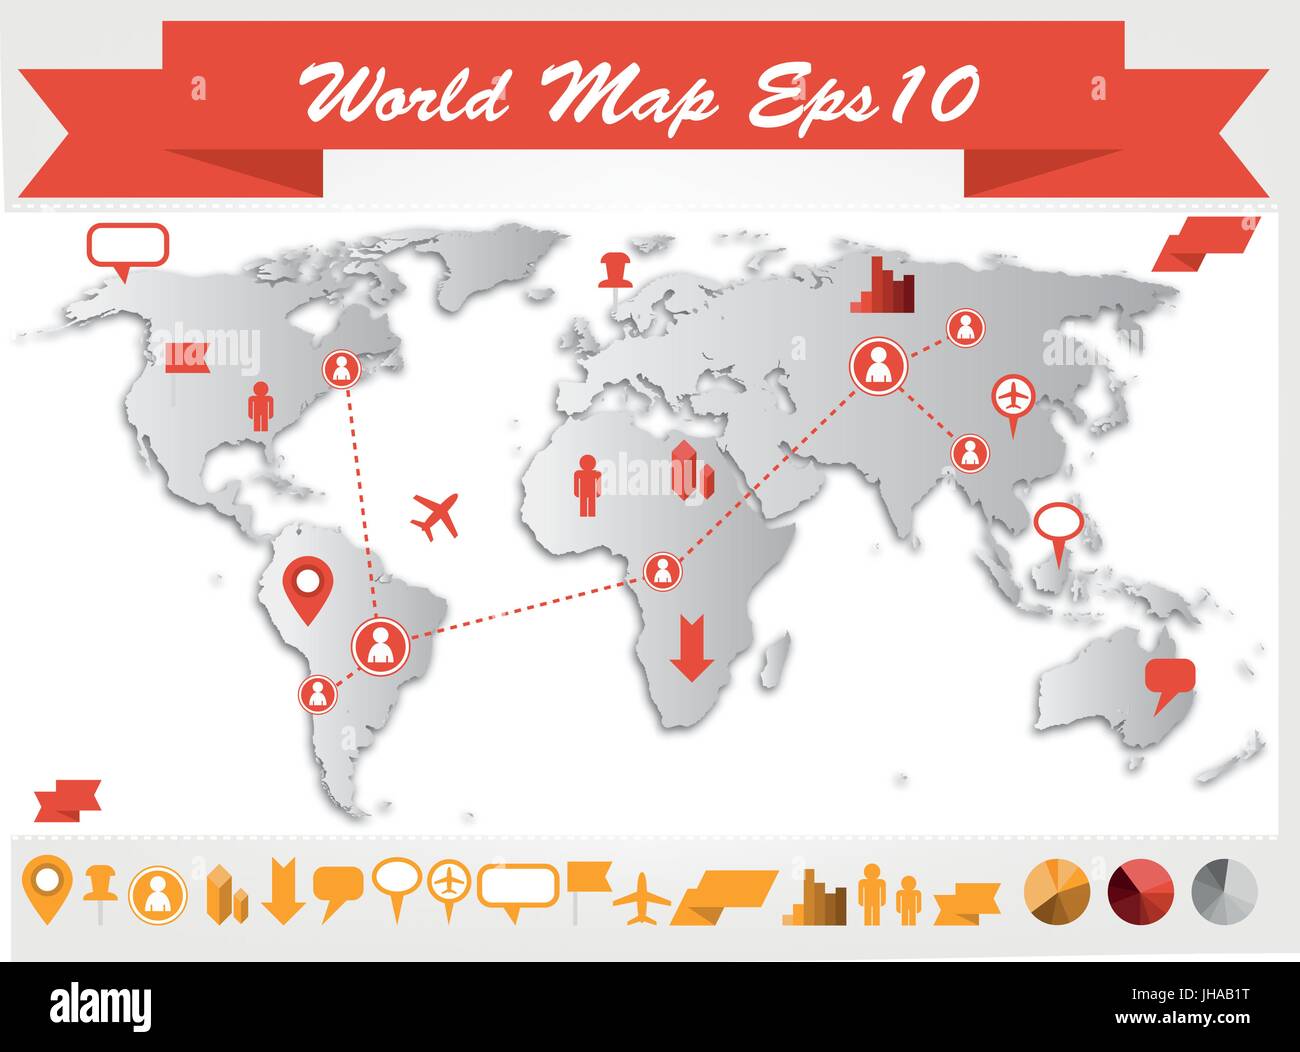 world map infographic illustration , web icon set Stock Photo